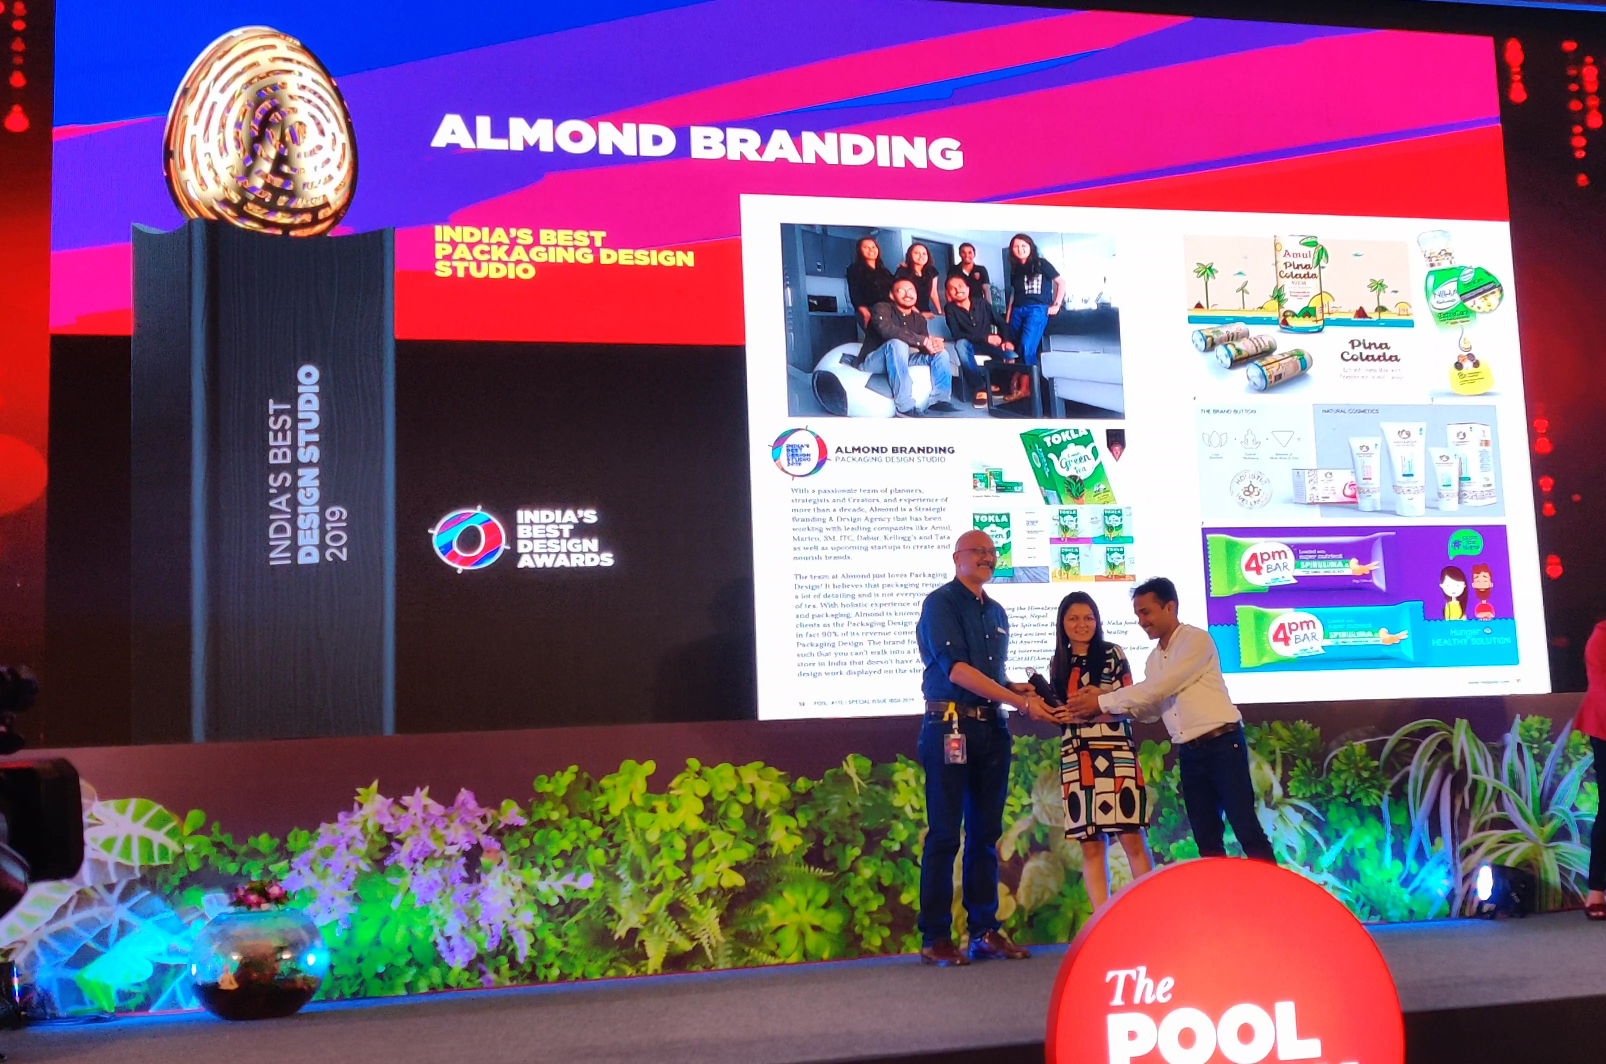 Almond-Branding-best-Design-Agency-Award